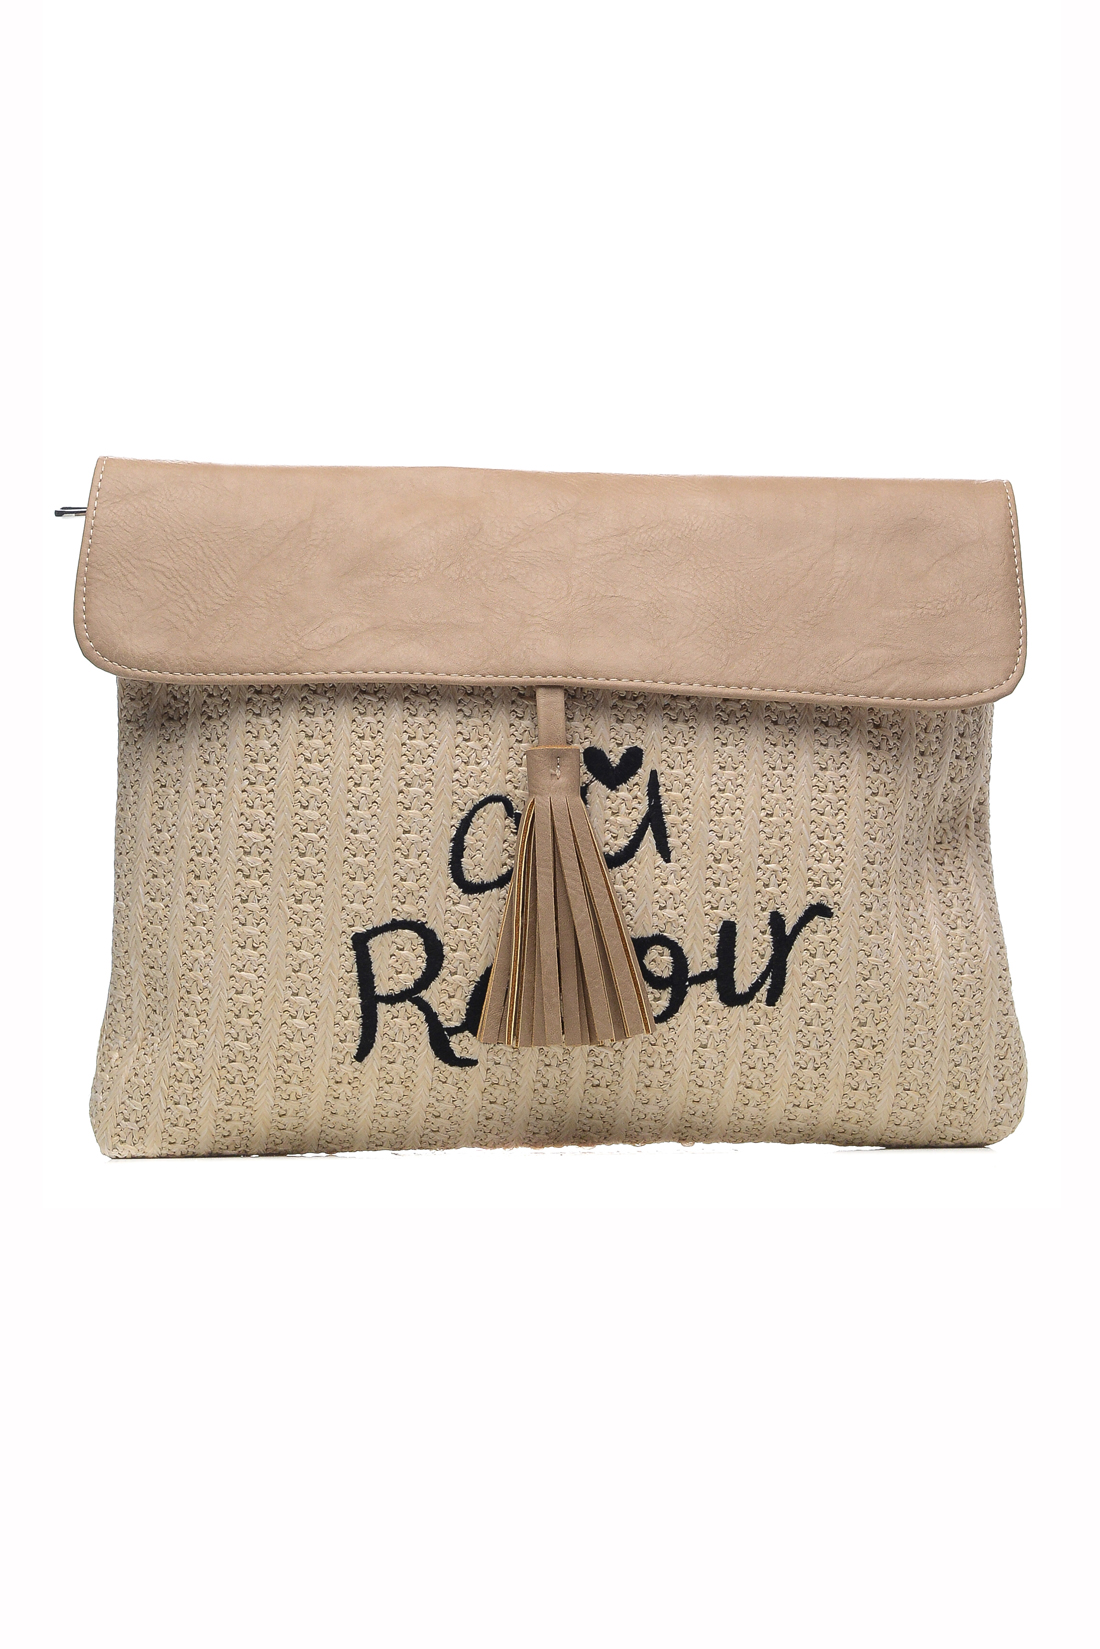 Клатч с вышивкой (арт. baon B379013), размер Без/раз, цвет бежевый Клатч с вышивкой (арт. baon B379013) - фото 1